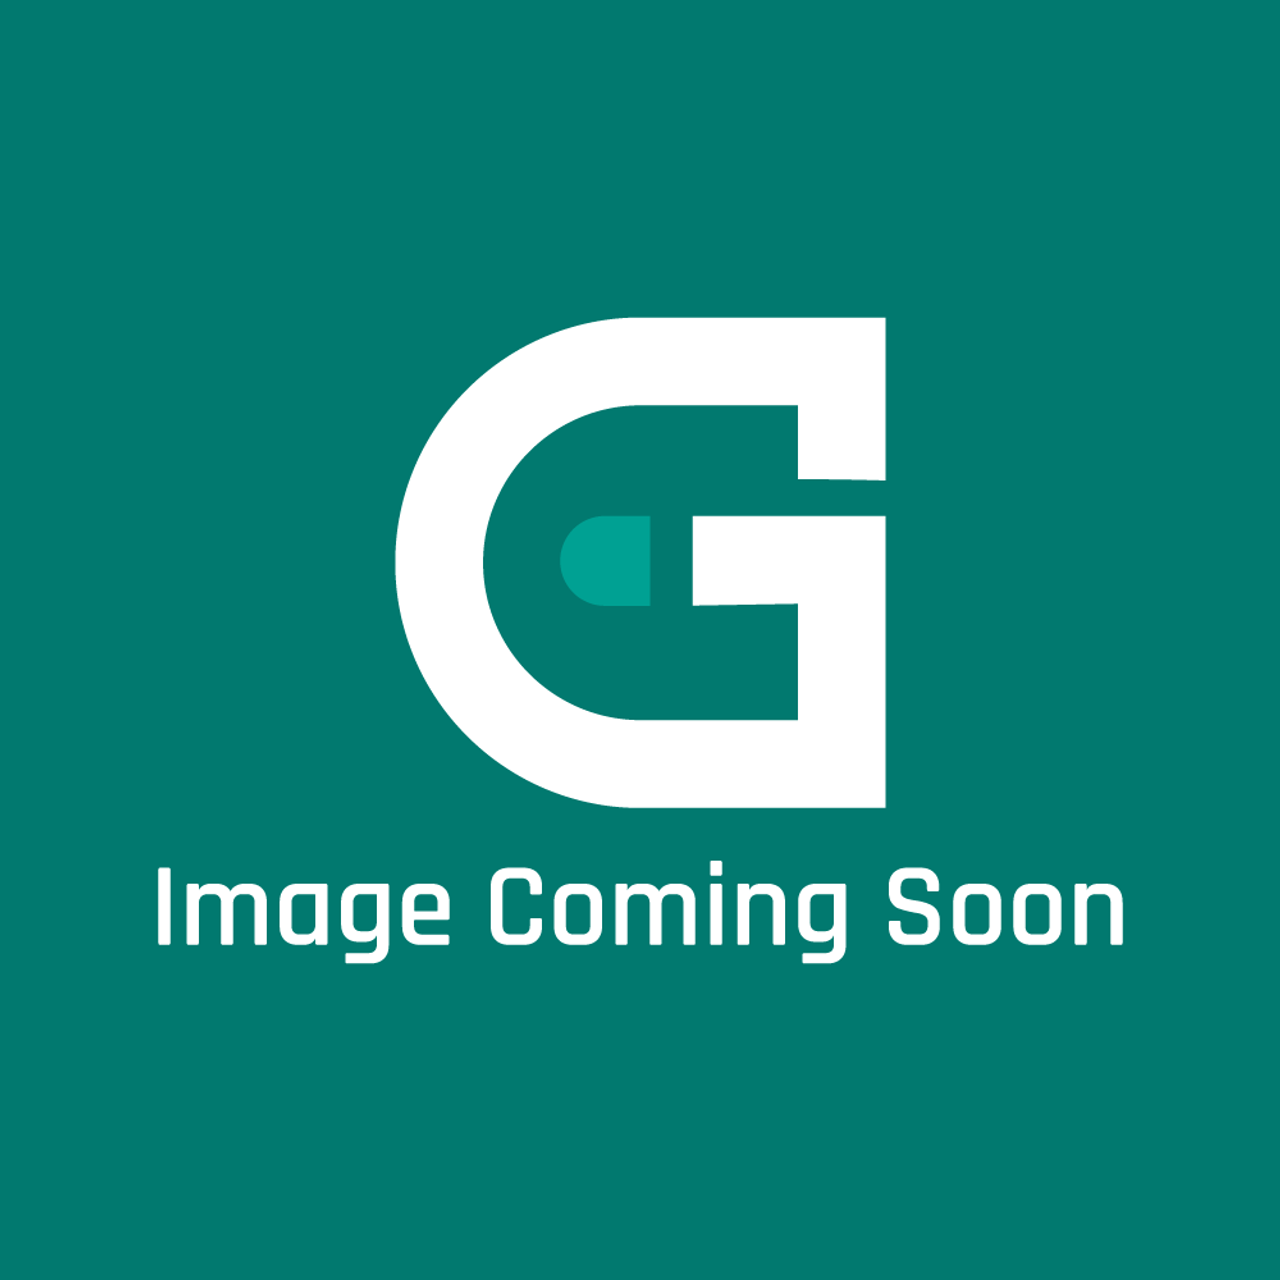 Frigidaire - Electrolux 242185654 Dsp Door-Refr - Image Coming Soon!